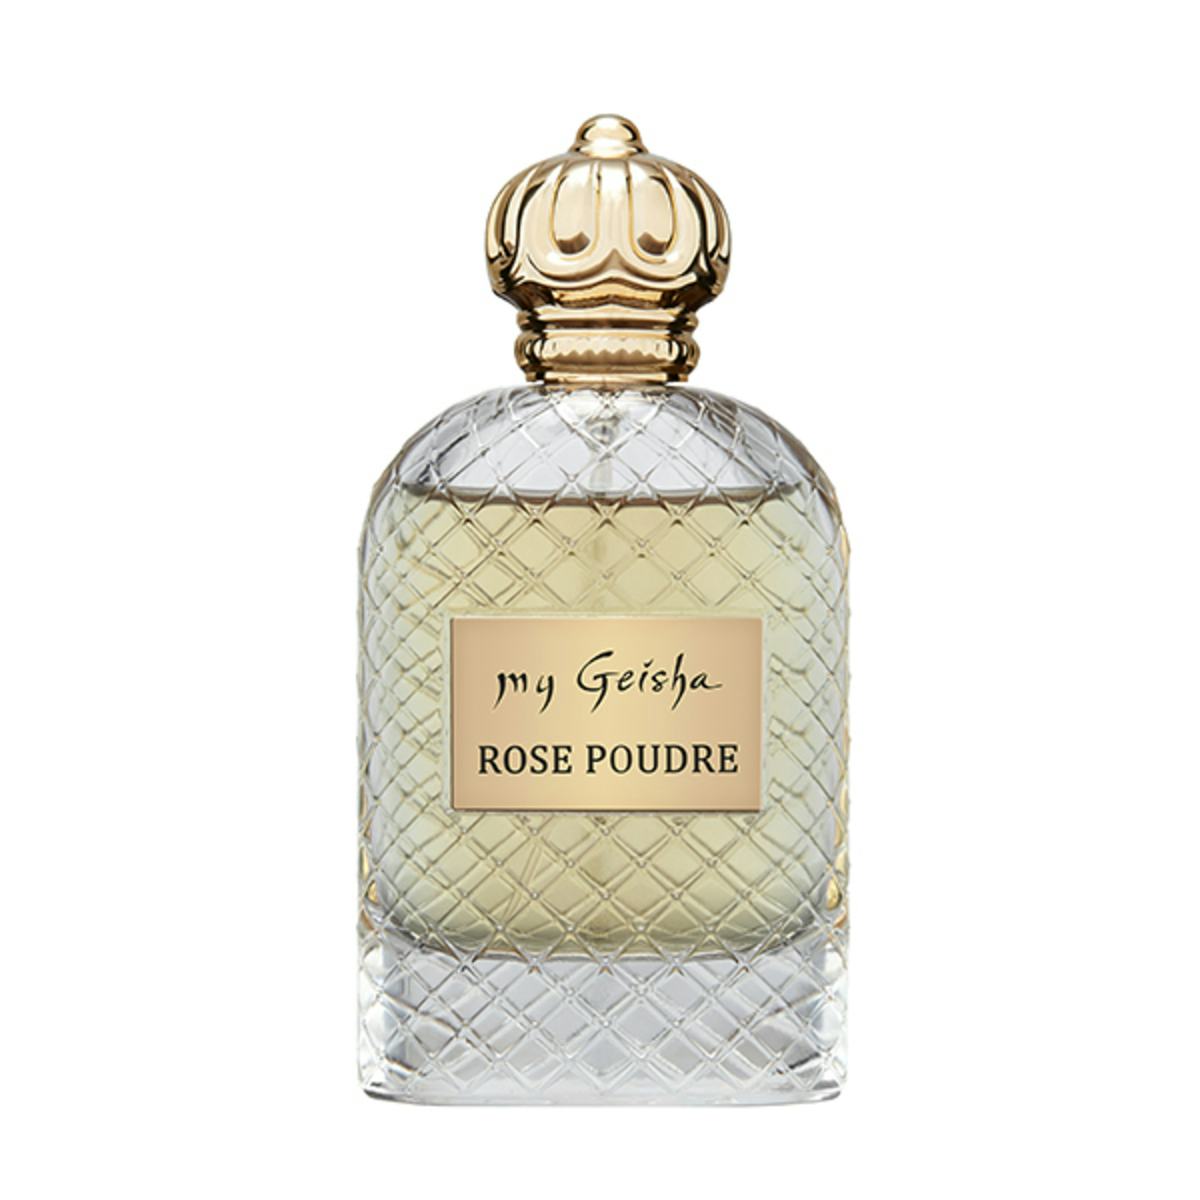 Extrait de parfum Rose Poudre 100 ml, produit artisanal en vente directe en Suisse